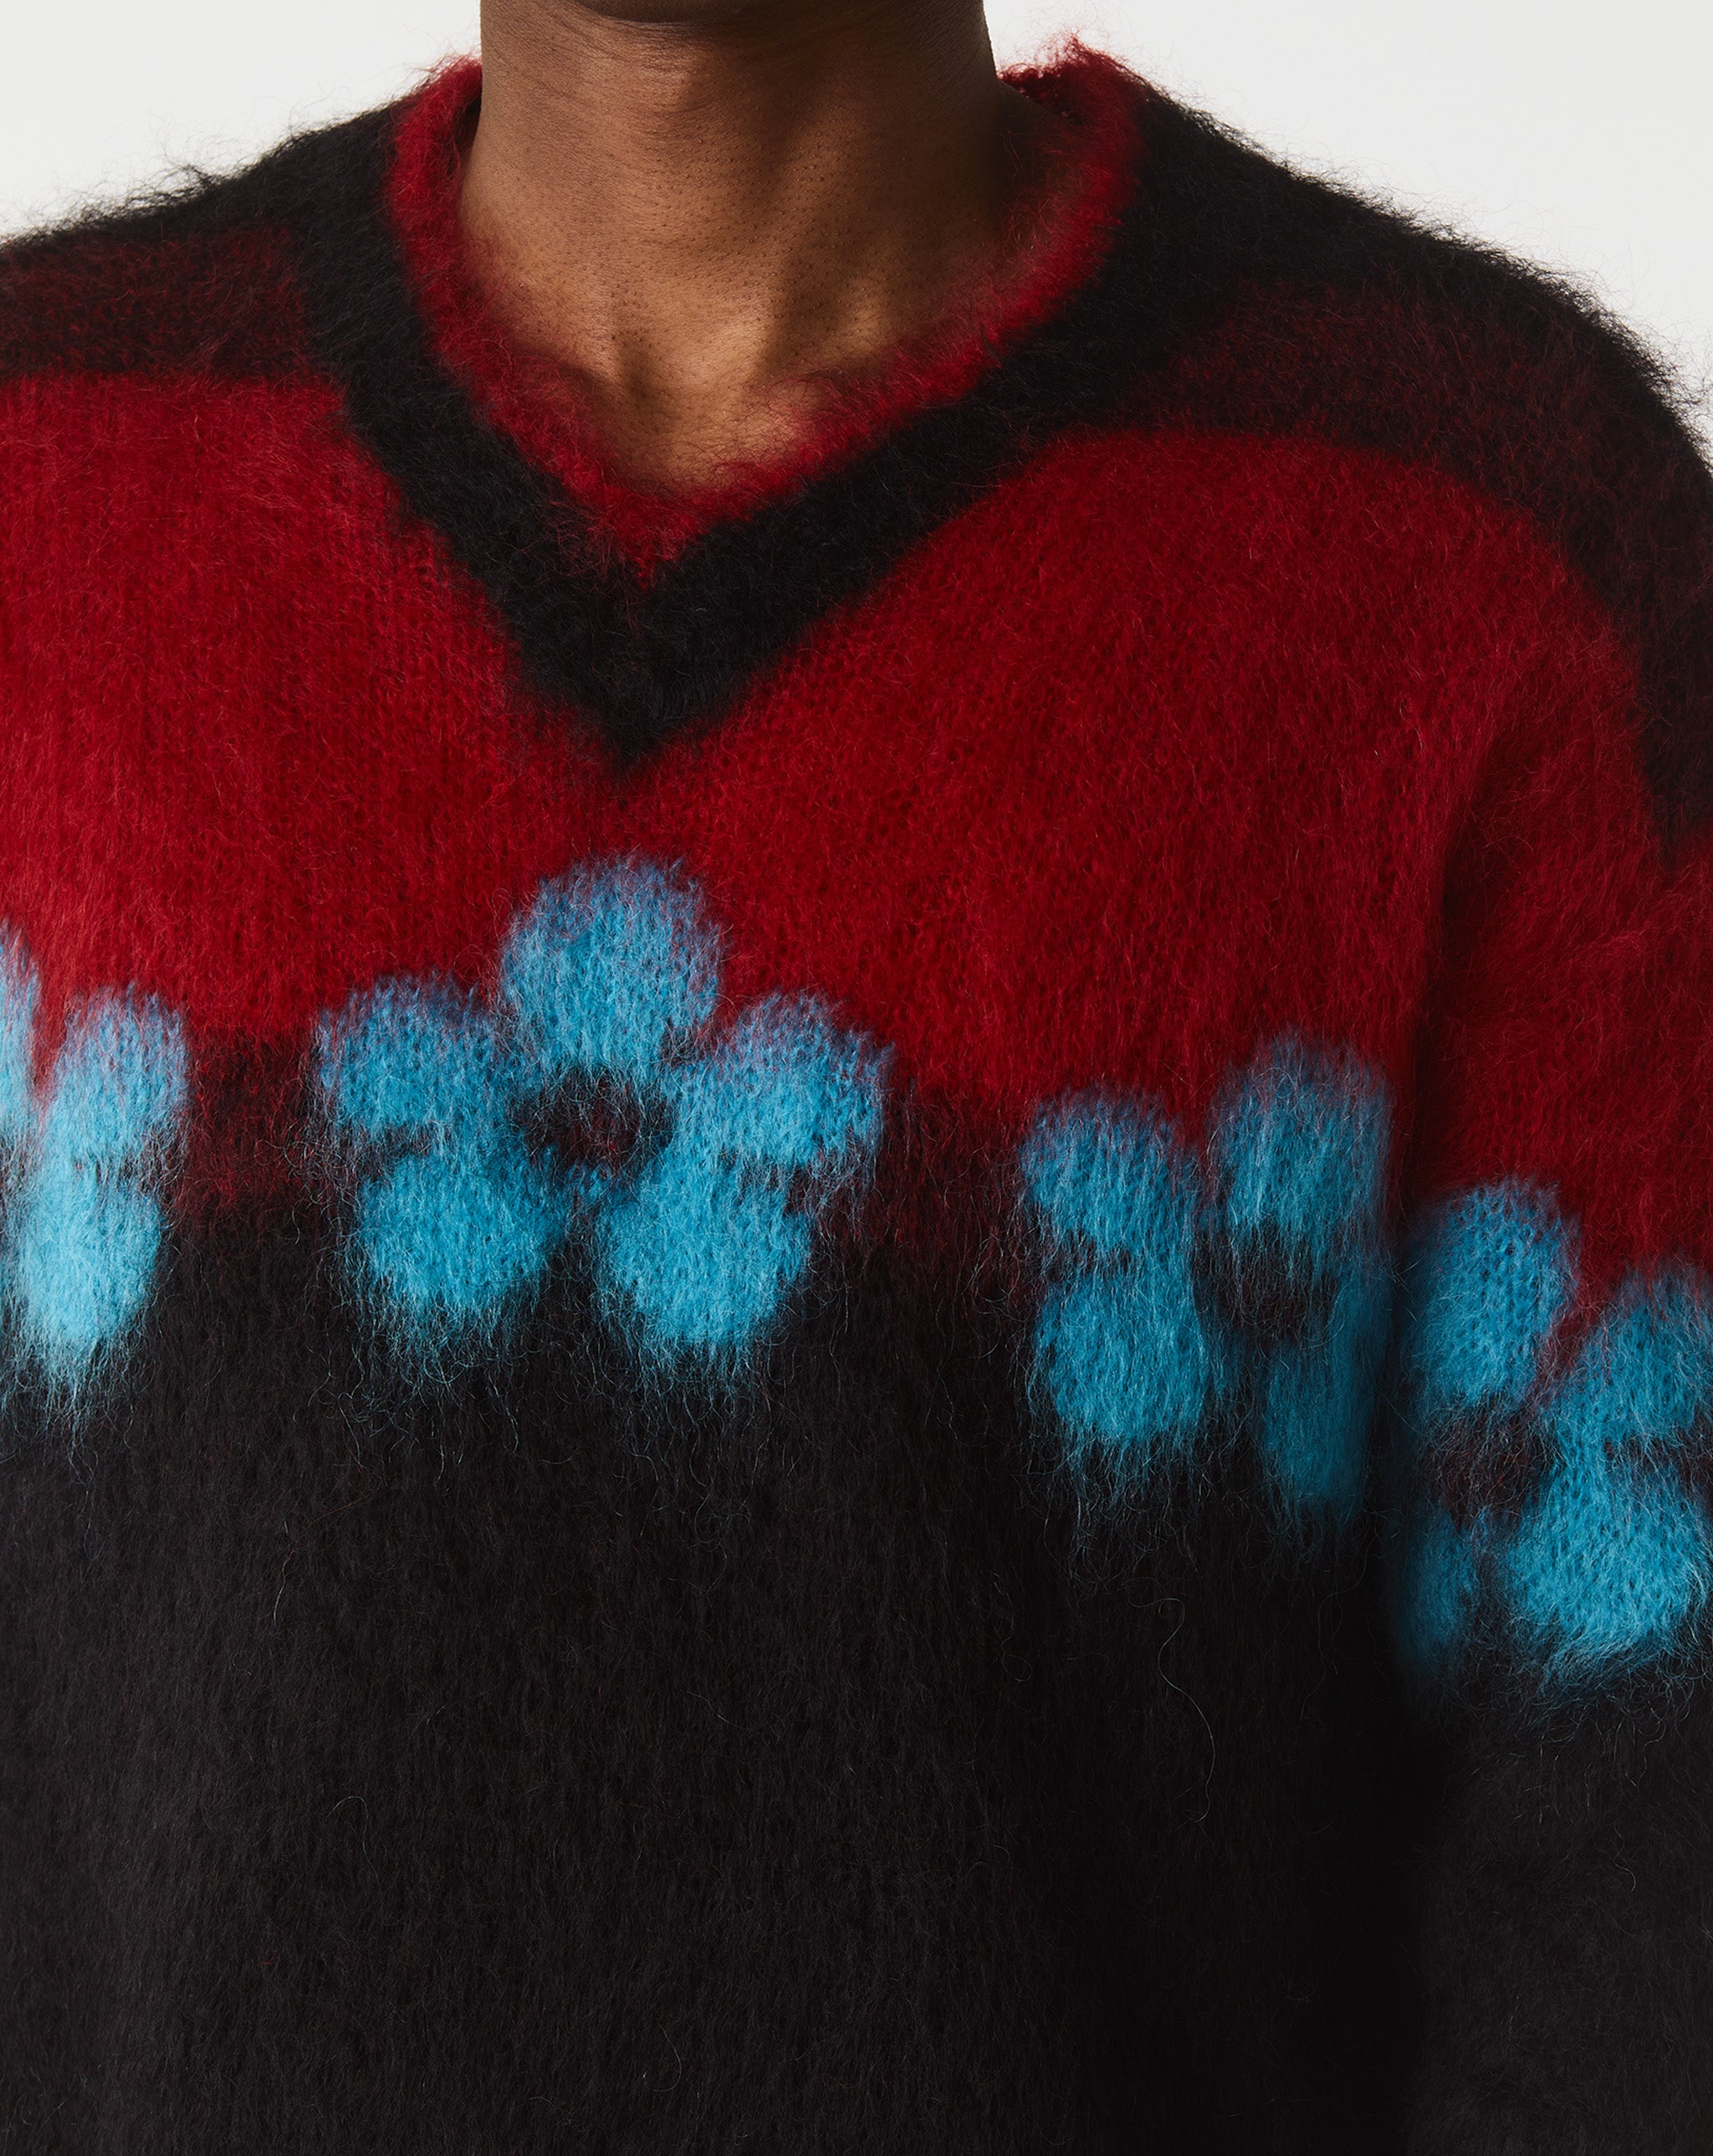 Marni Fuzzy Wuzzy Flowers Sweater  - XHIBITION